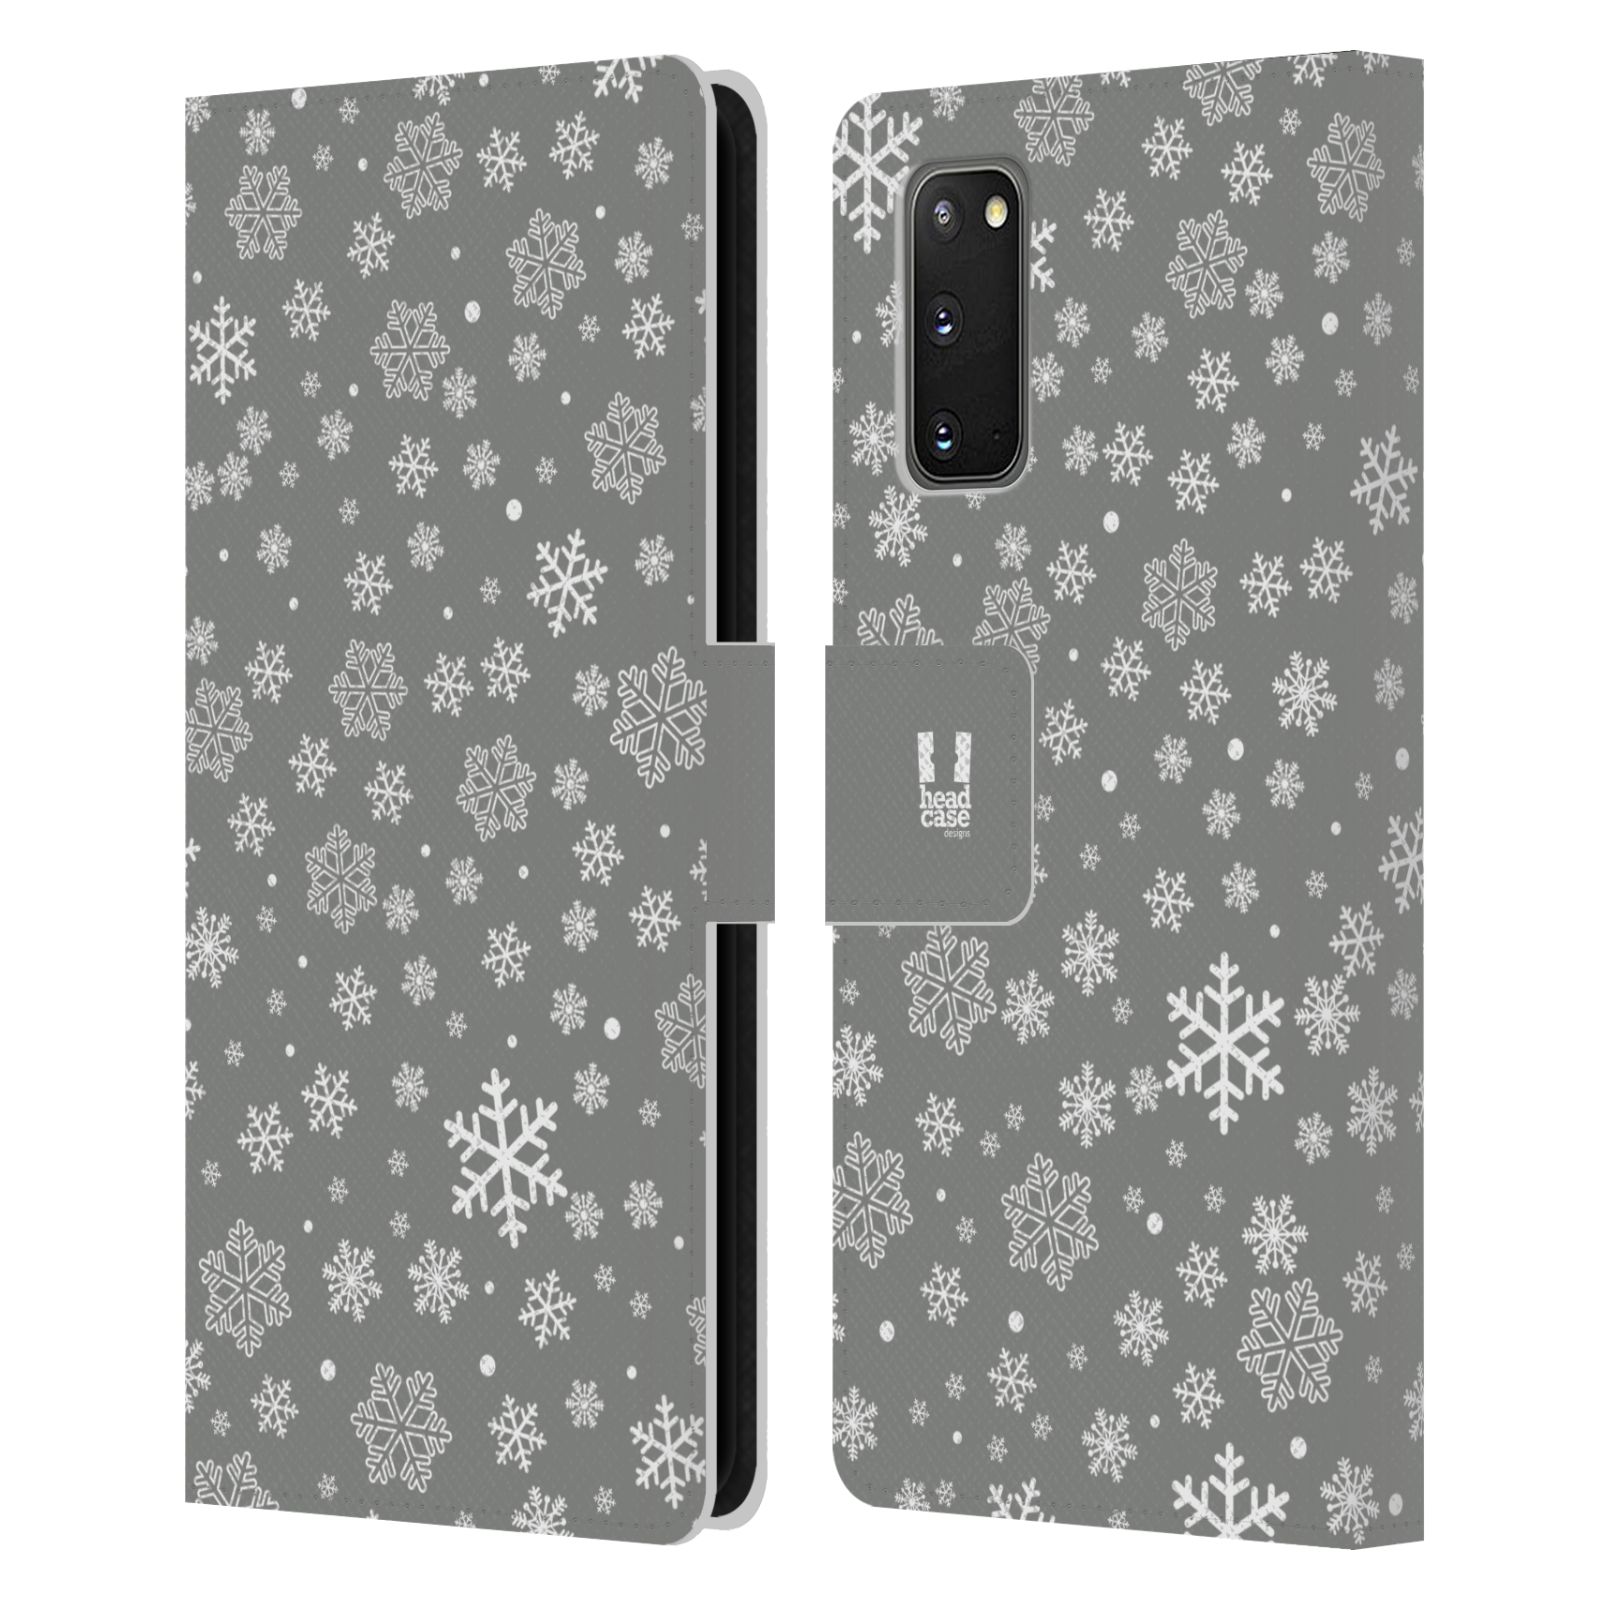 Pouzdro na mobil Samsung Galaxy S20 stříbrné vzory sněžná vločka